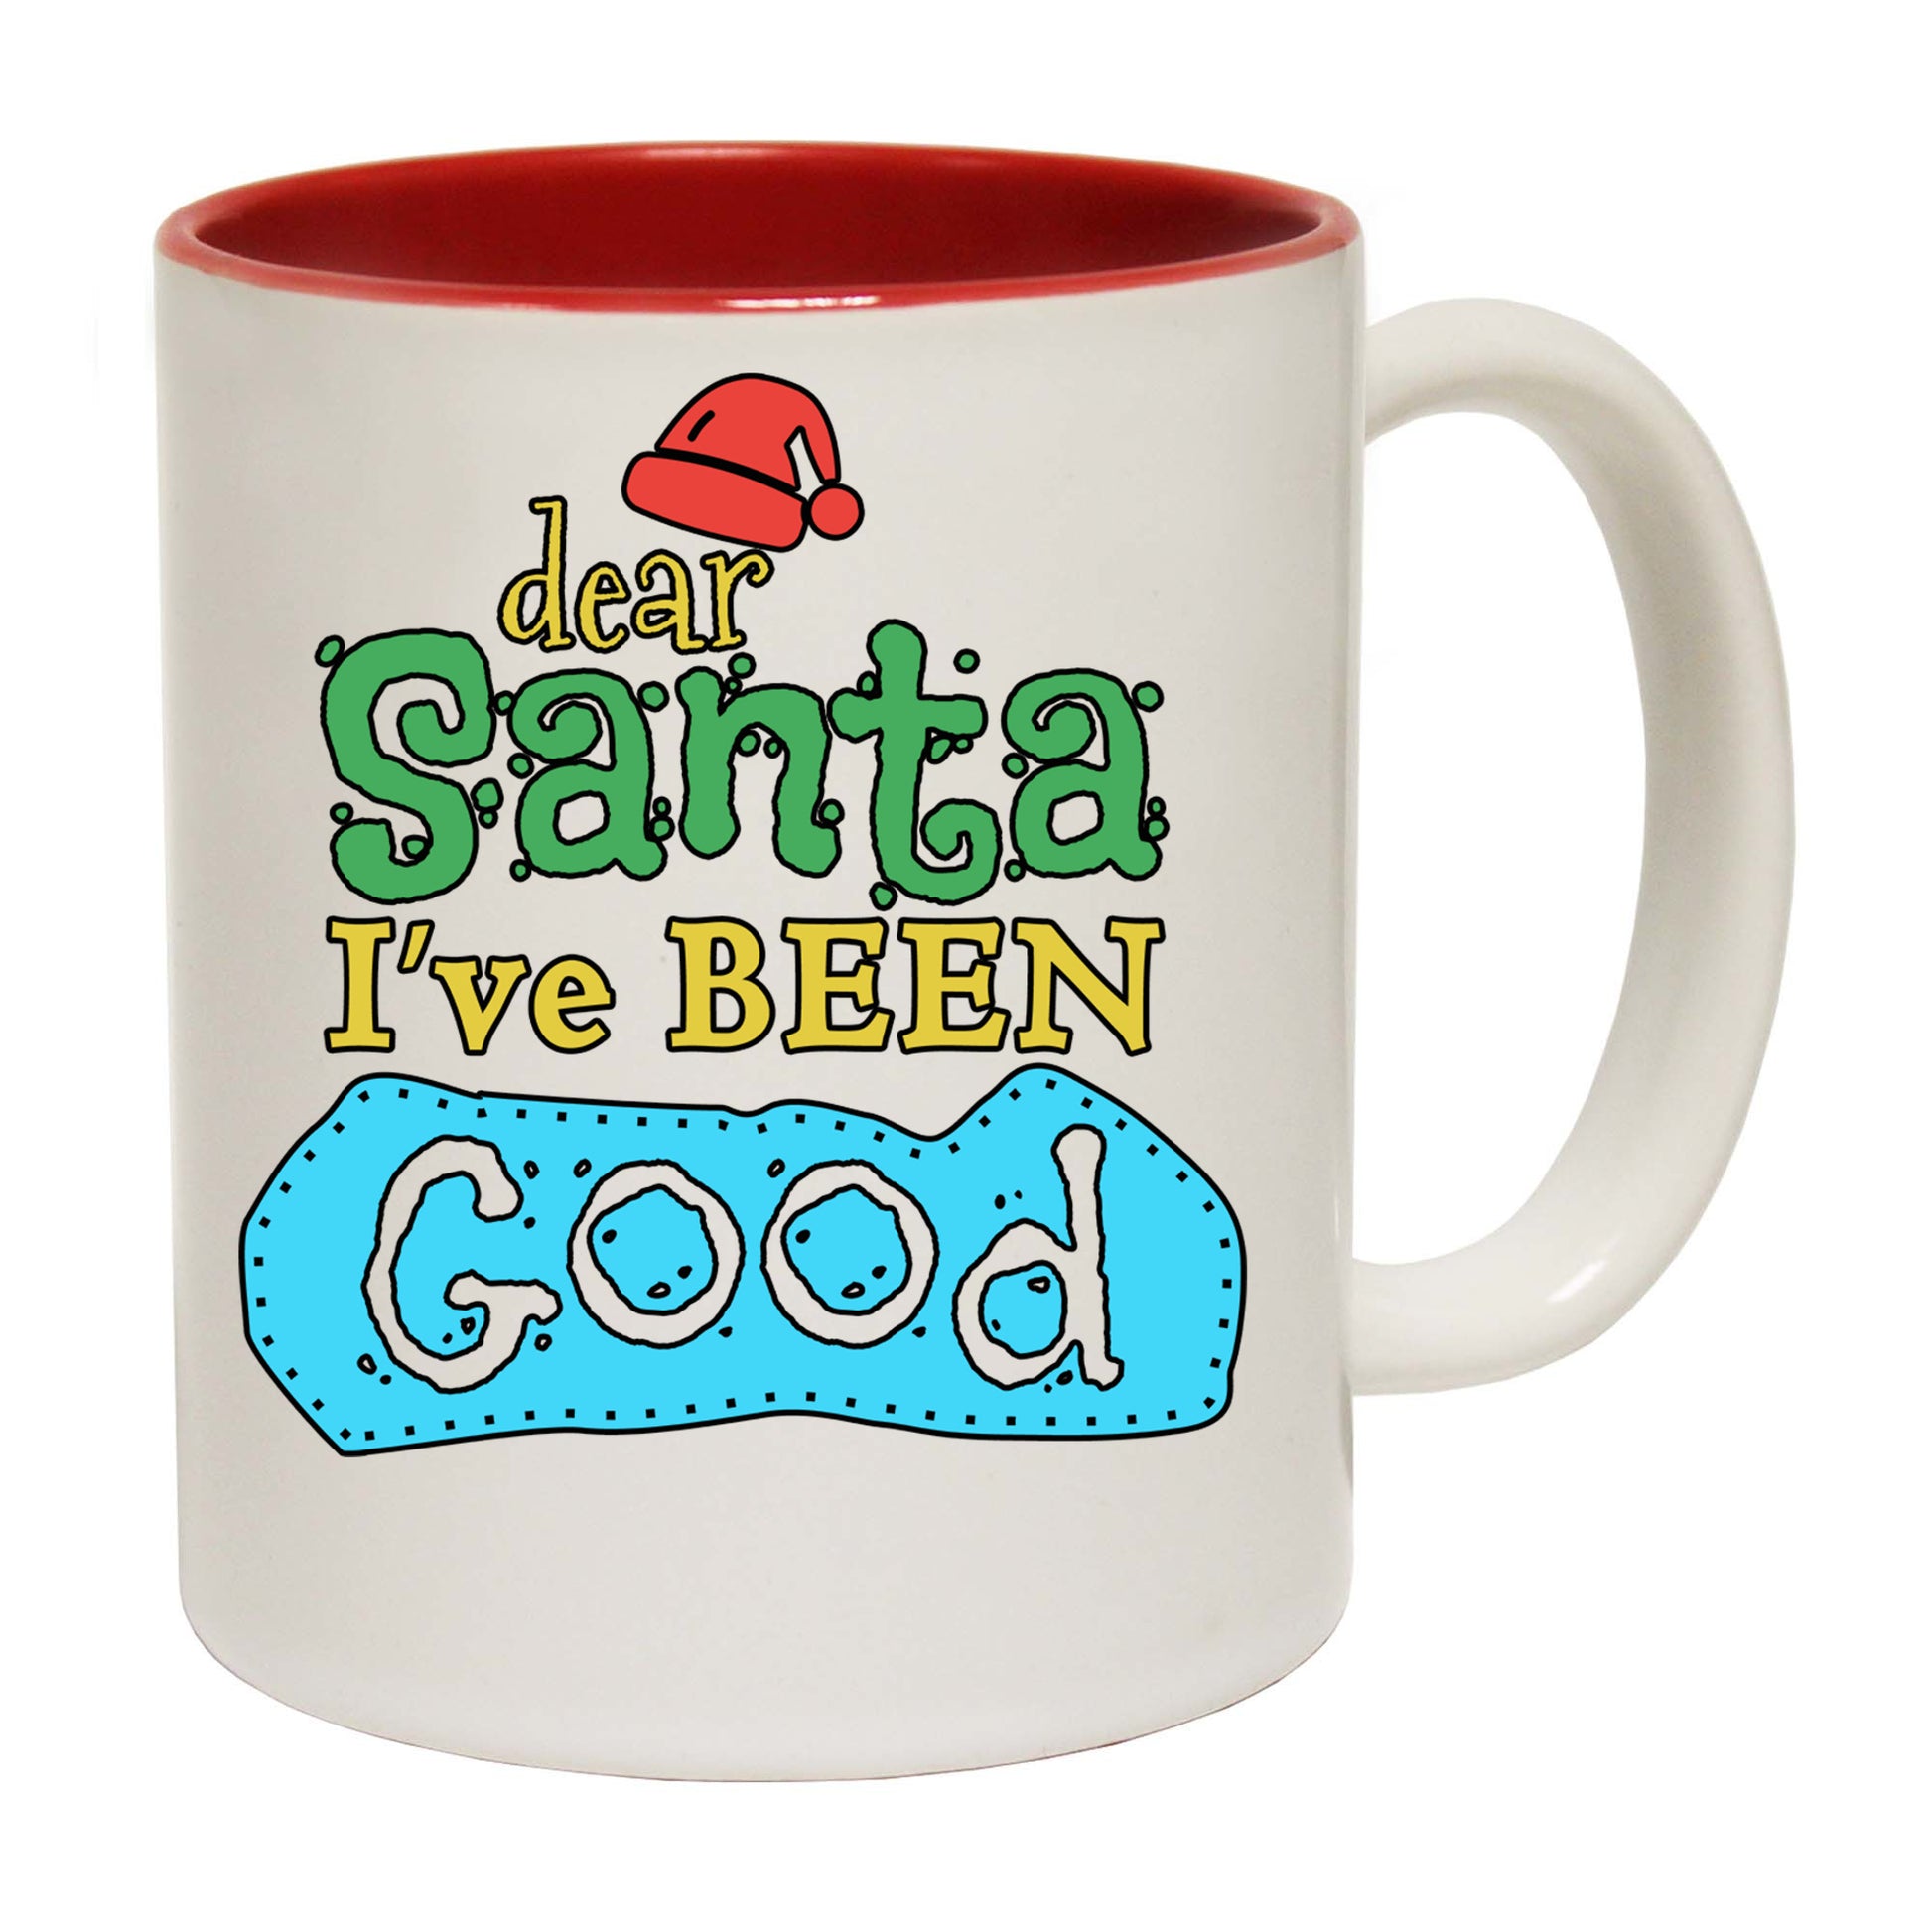 The Christmas Hub - Dear Santa Ive Been Good Christmas Xmas - Funny Coffee Mug